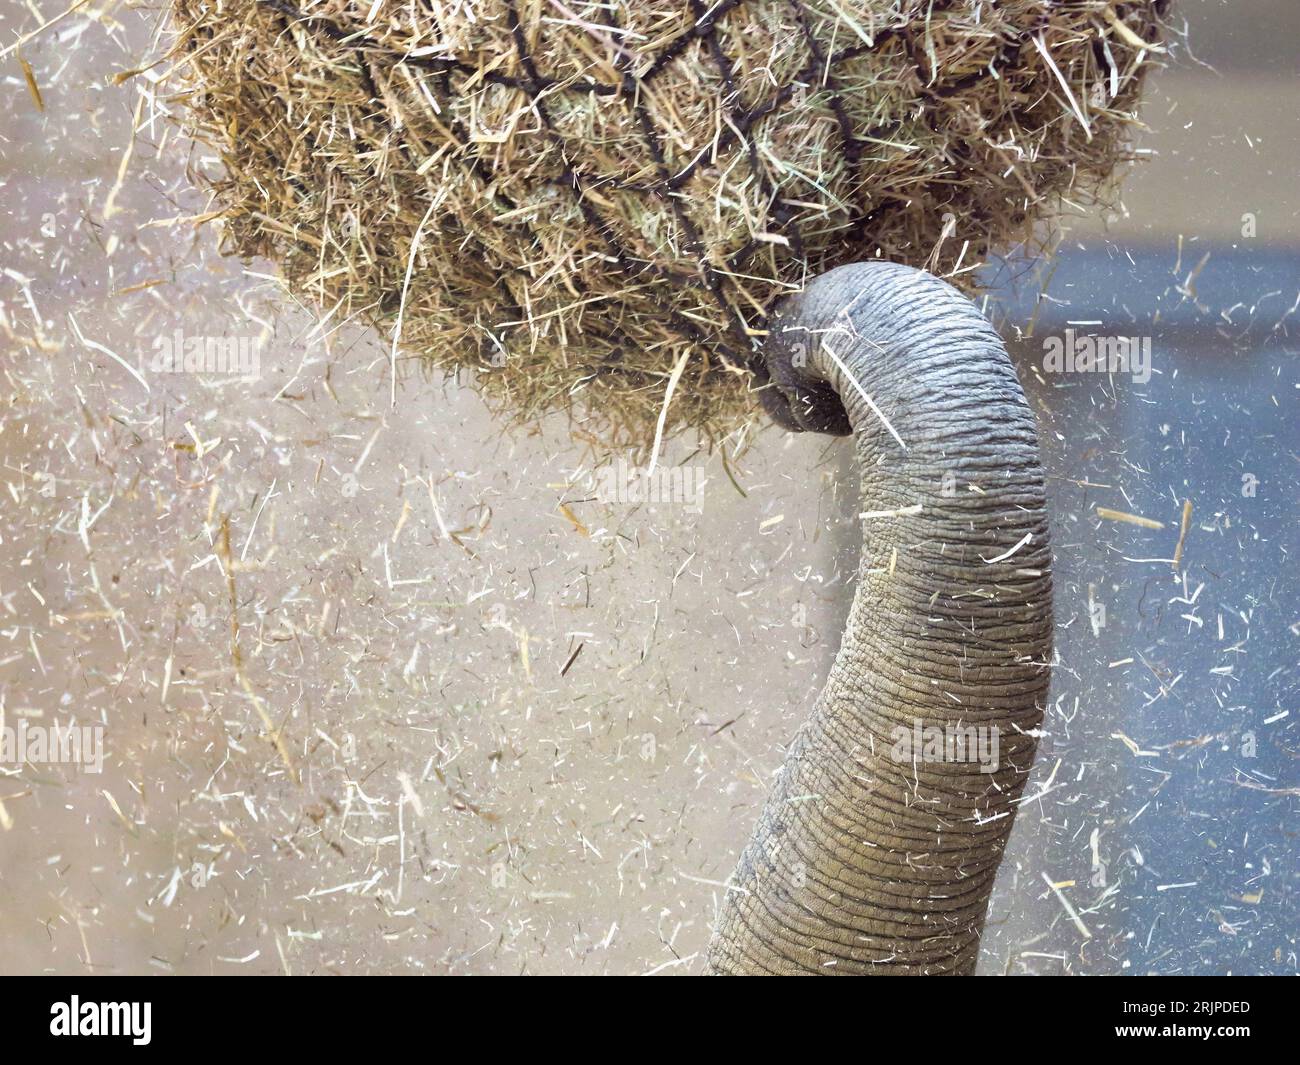 Un primo piano di un elefante che raggiunge il suo tronco per afferrare una balla di fieno intrappolata in una rete Foto Stock